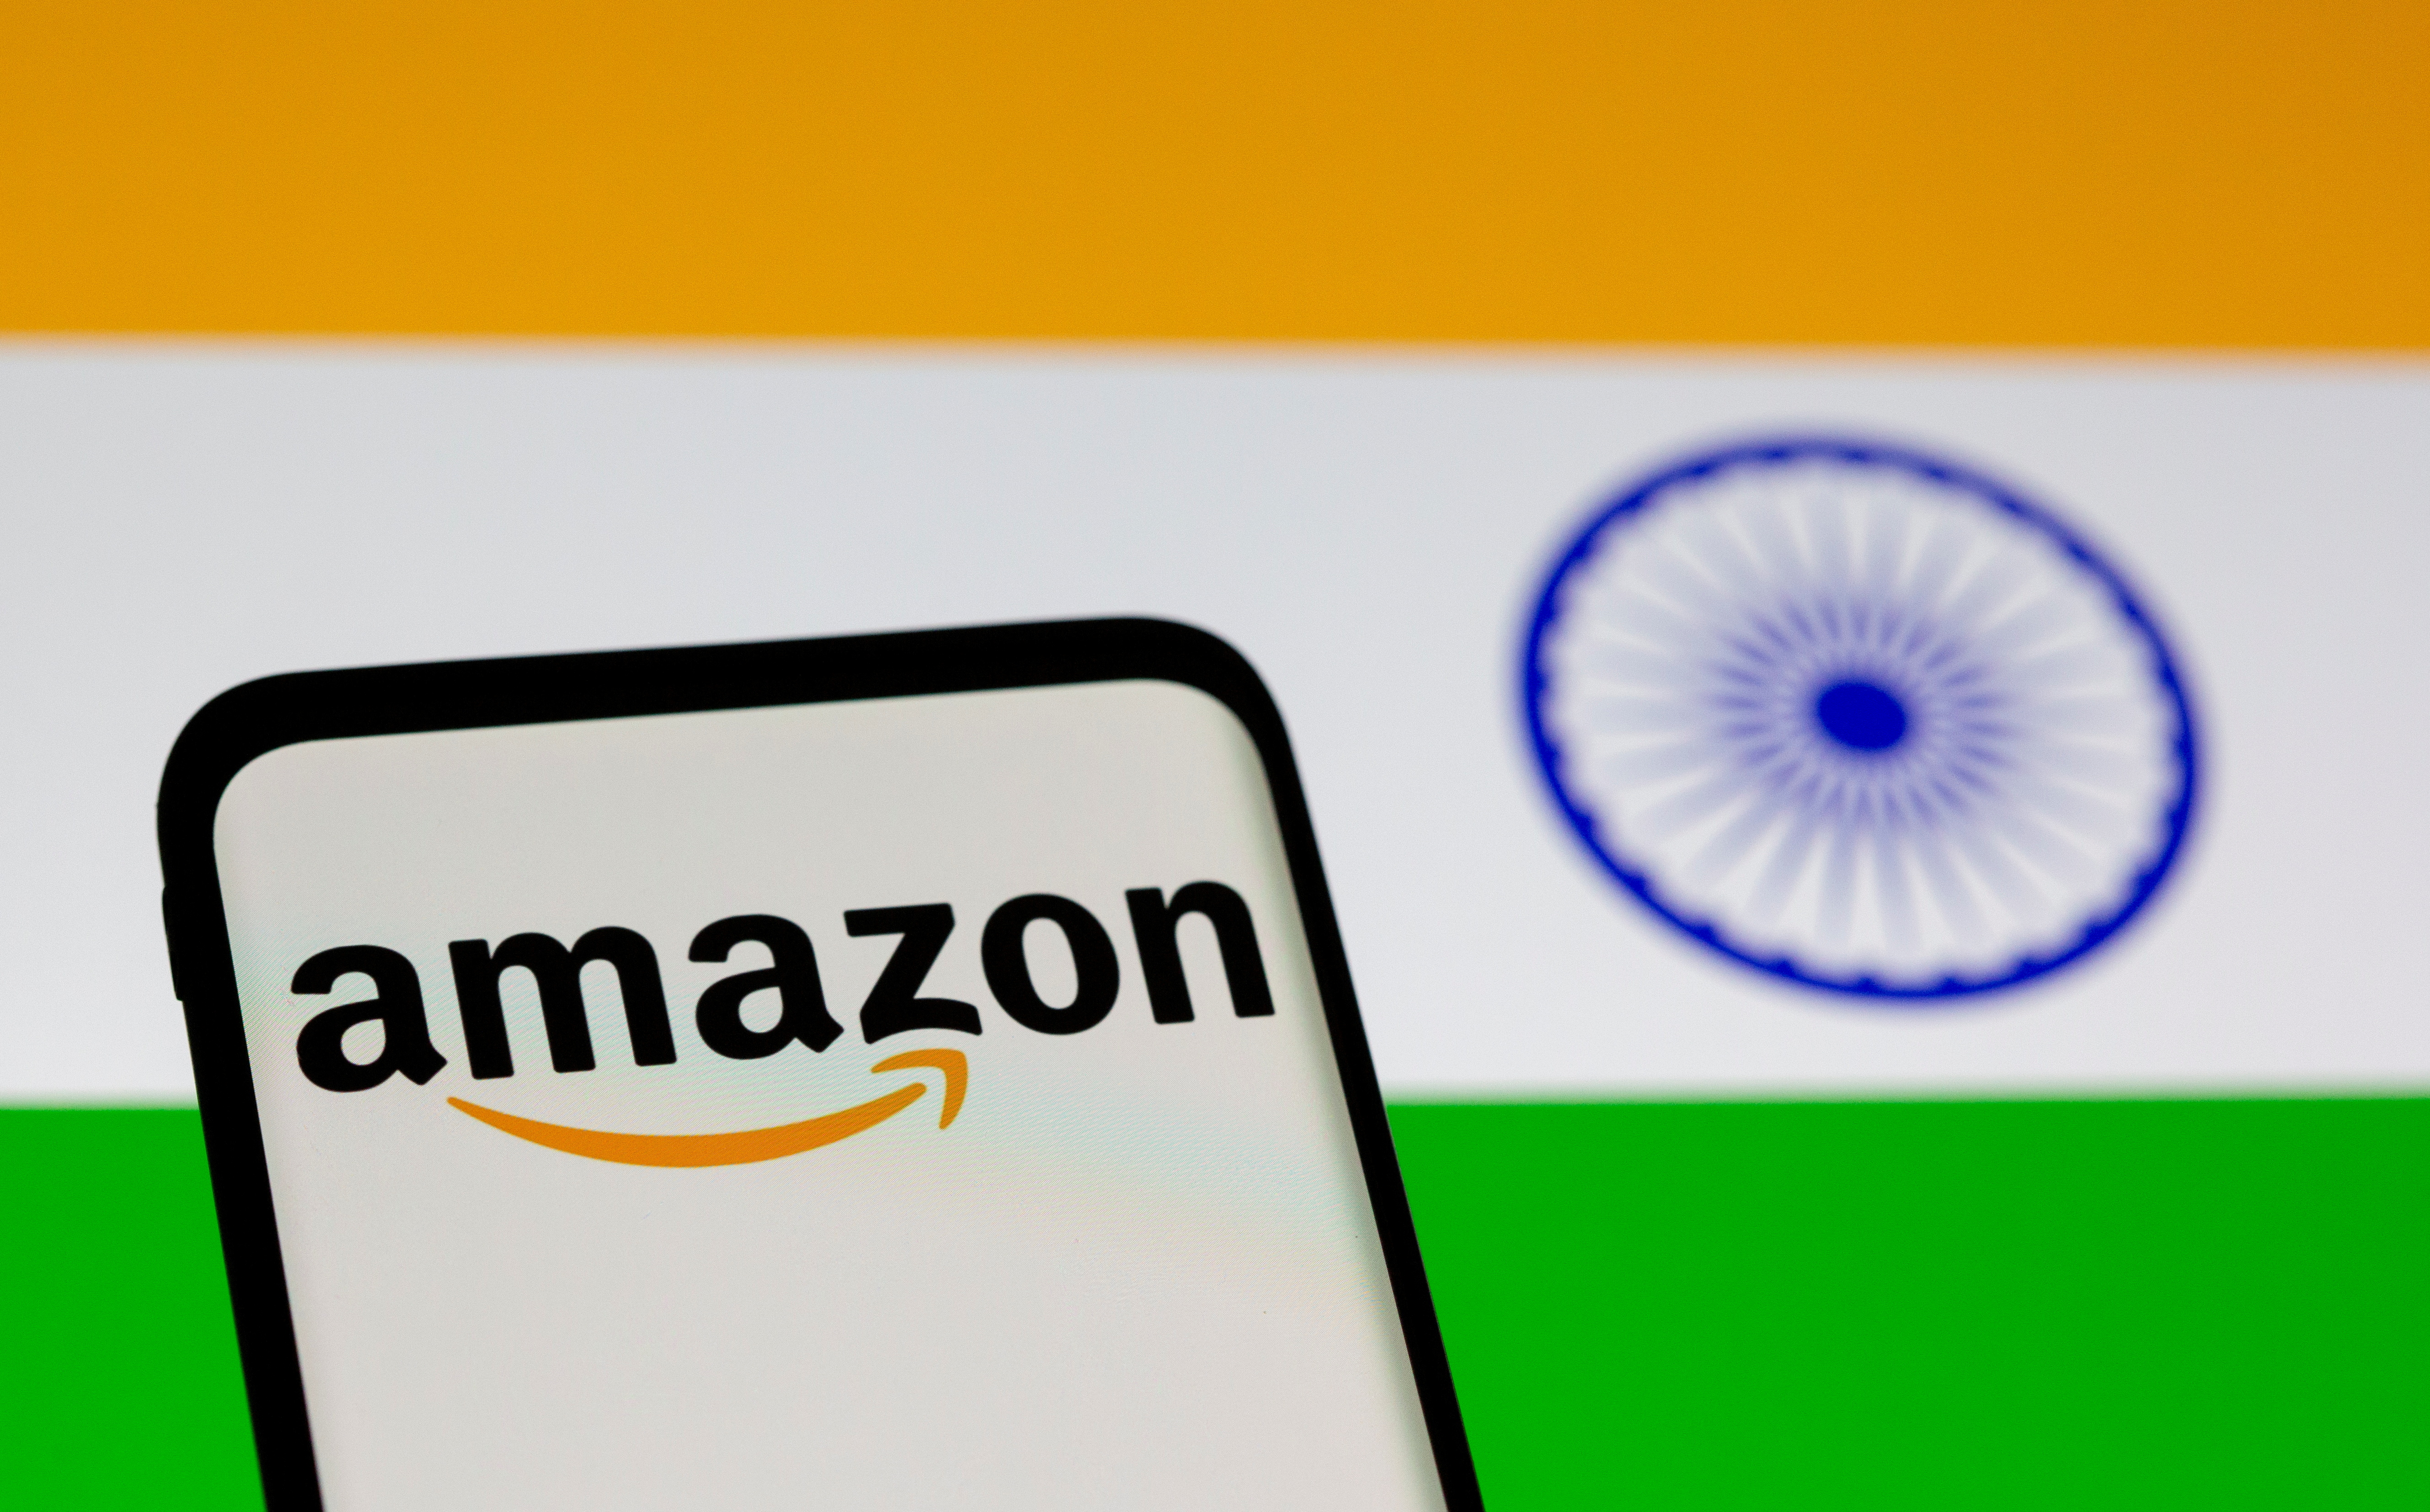 Amazon logo and Indian flag illustration